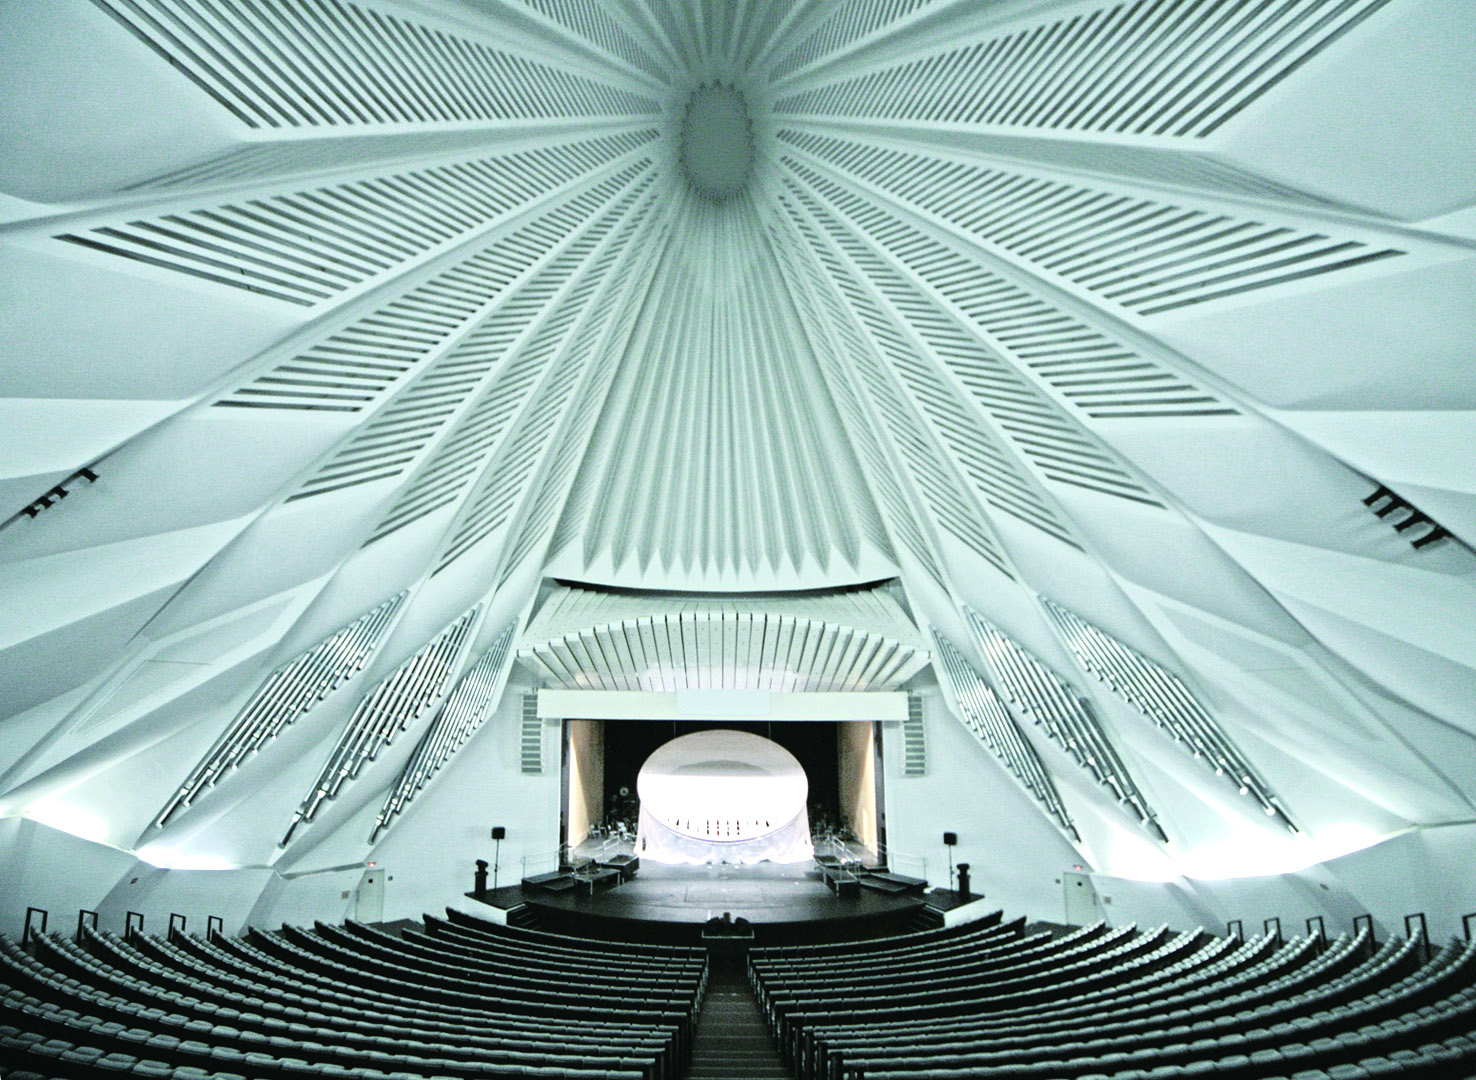 交響樂廳裡，浪花般的折板天花提供聲音均勻散射